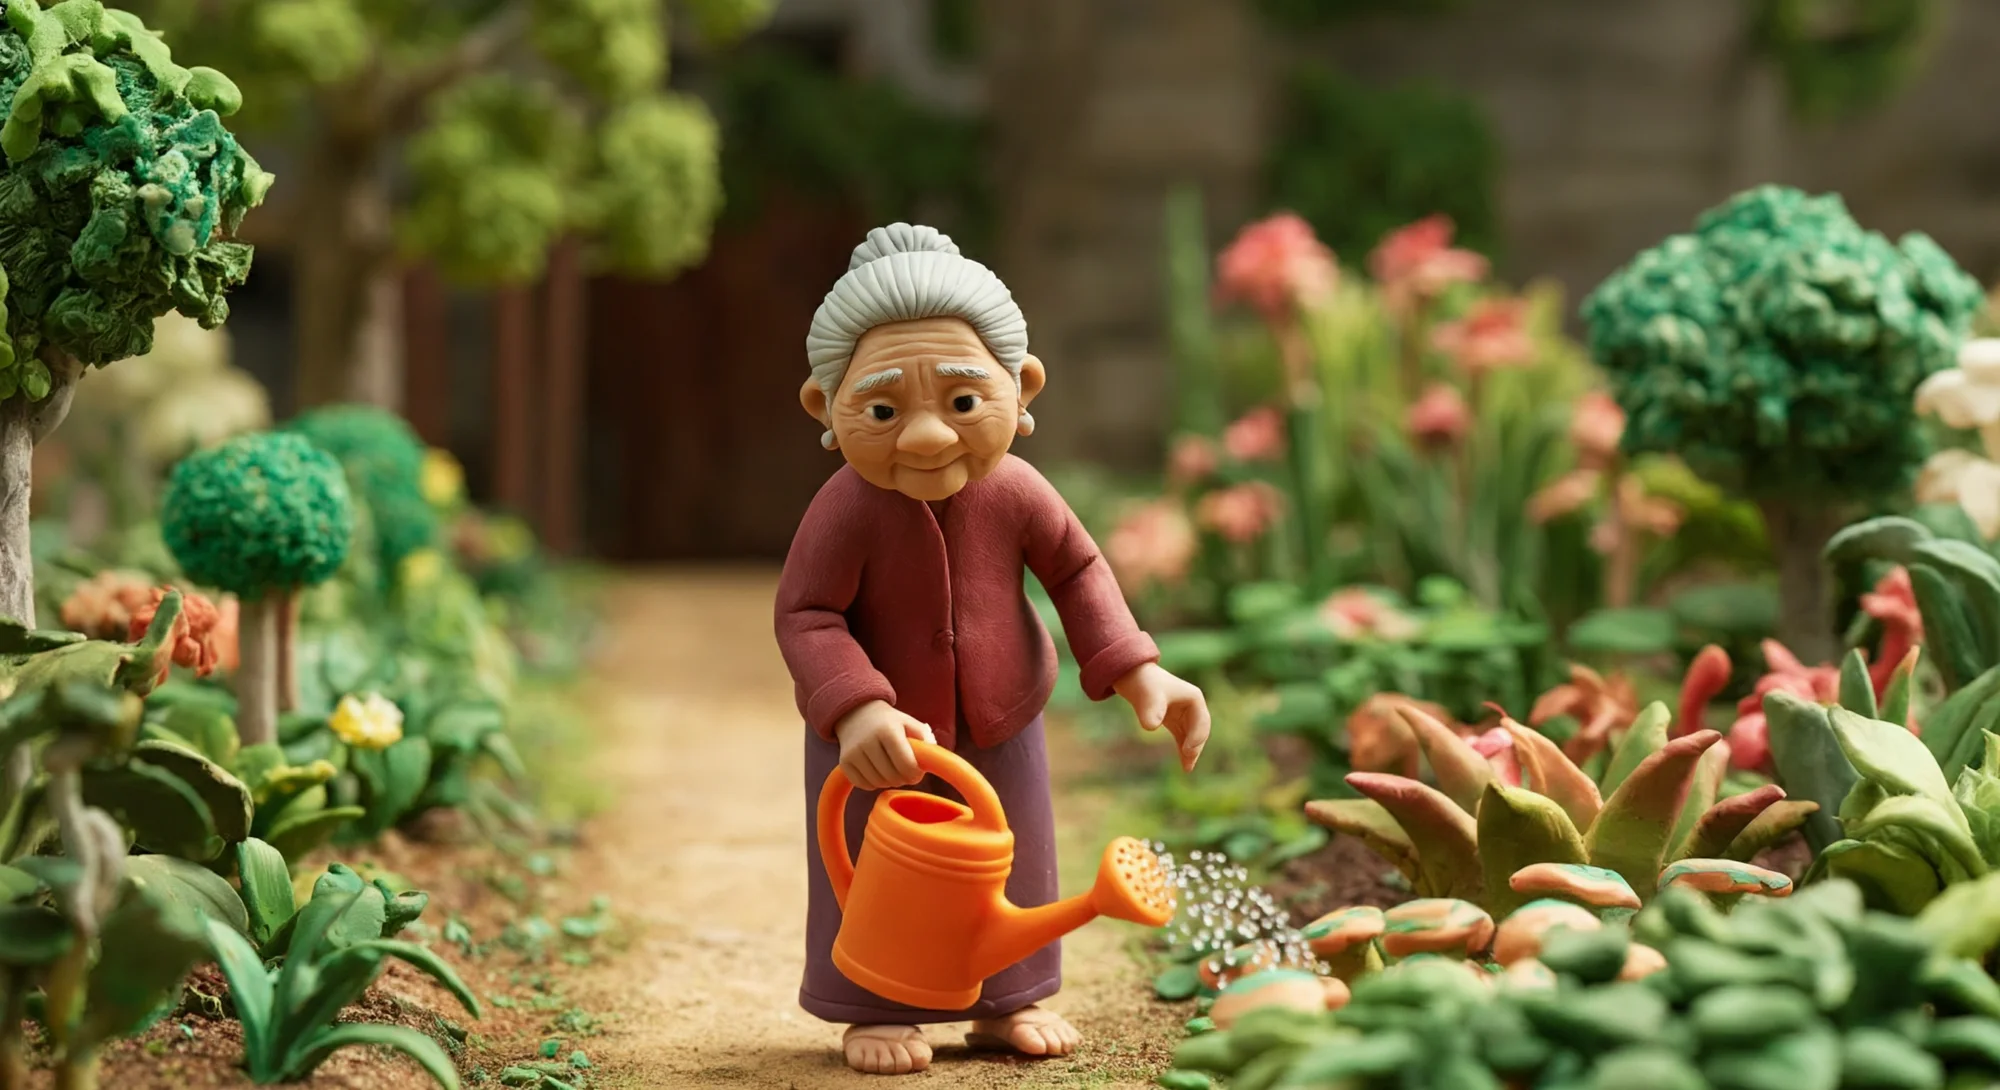 Une scène entièrement réalisée en argile représentant une femme âgée portant un haut rouge fluide et une jupe taupe. Elle marche sur un chemin droit dans un jardin, avec des plantes luxuriantes poussant de chaque côté du chemin. Elle tient un grand arrosoir orange dans sa main droite et l'utilise pour arroser les plantes.